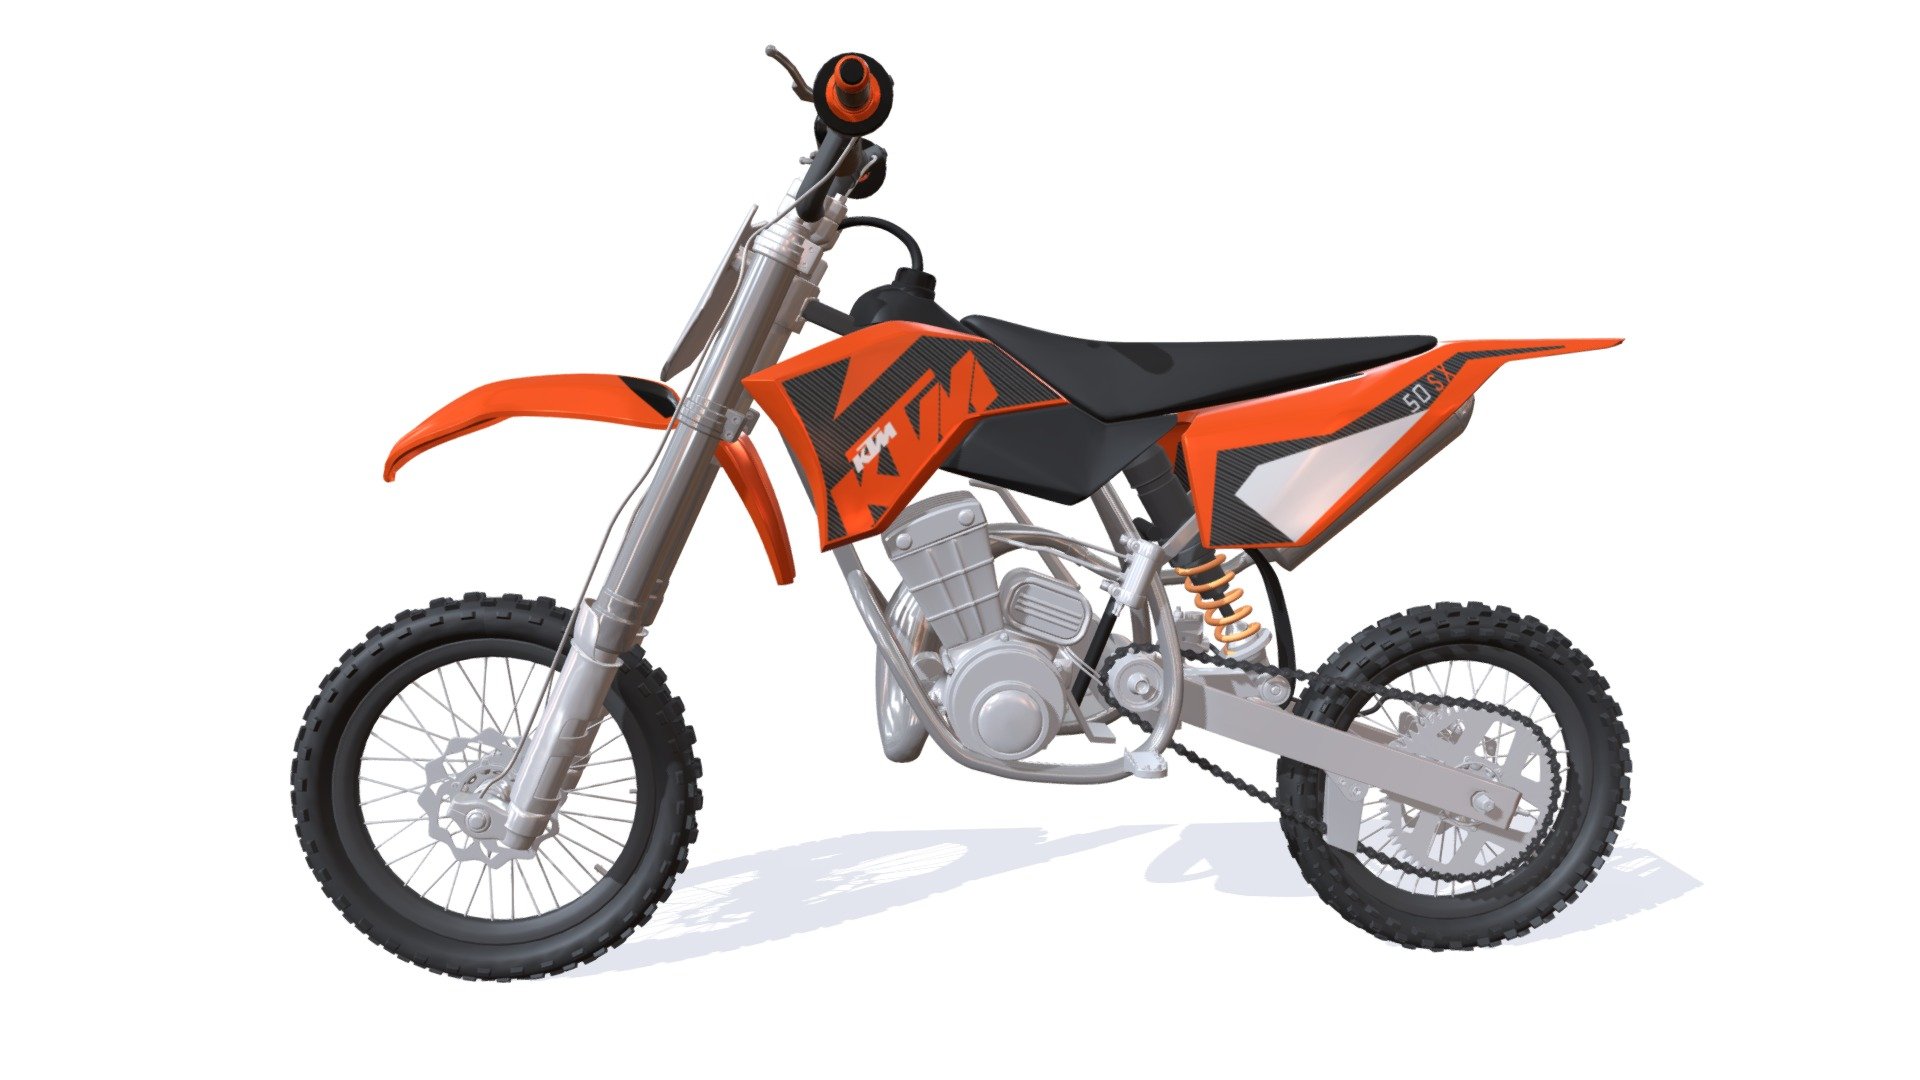 High quality 3d model of KTM motocross bike 3d model